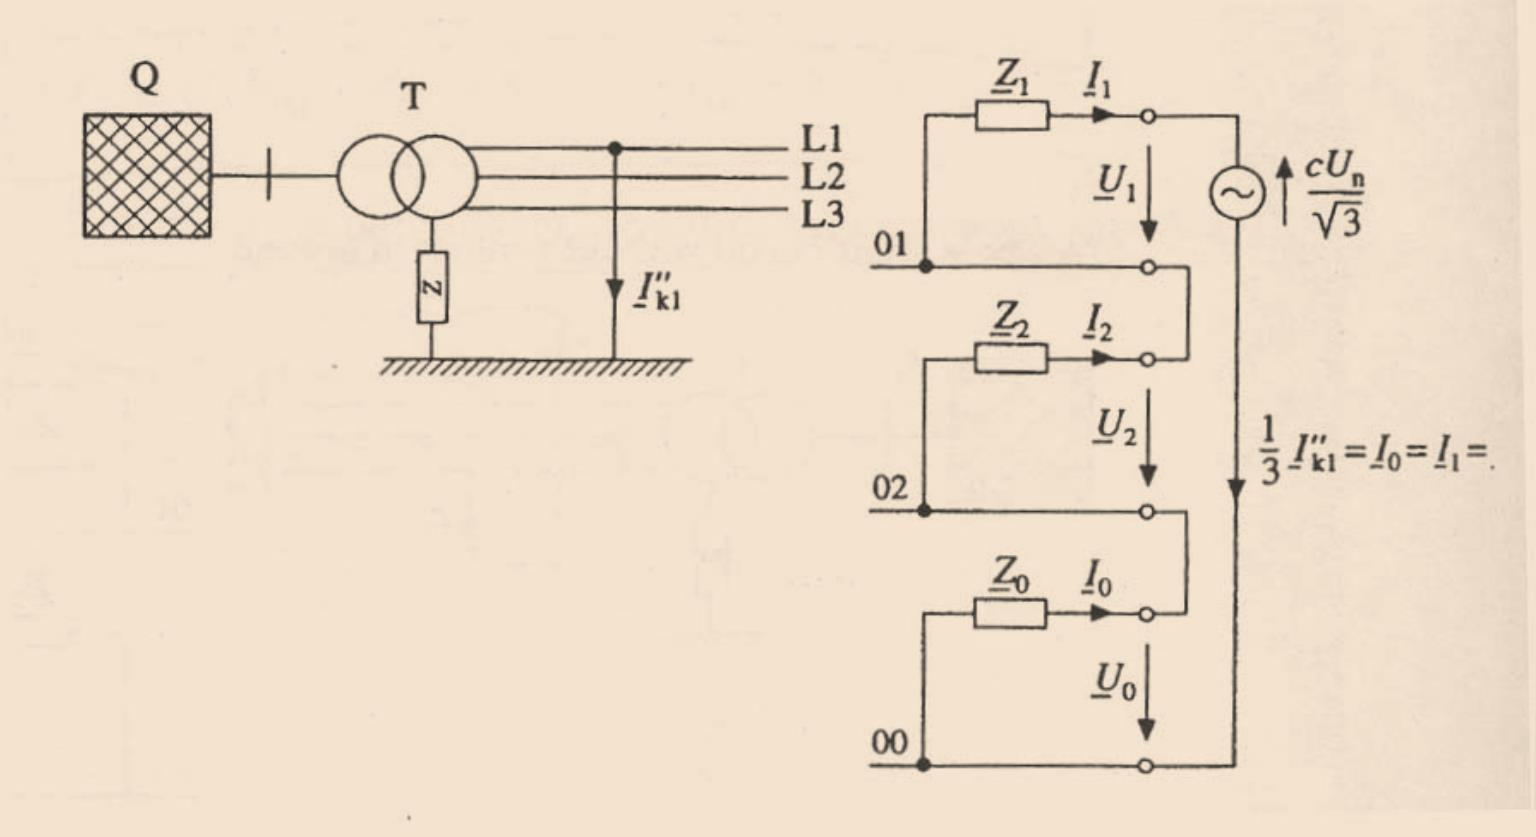 4.3 Μονοφασικό βραχυκύκλωμα ως προς νη Σχήμα 4.5 - Ισοδύναμο κύκλωμα για ένα μονοφασικό ρεύμα βραχυκύκλωσης ως προς γη Το μονοφασικό ρεύμα βραχυκύκλωσης συναντάται συχνά σε ηλεκτρικά δίκτυα.